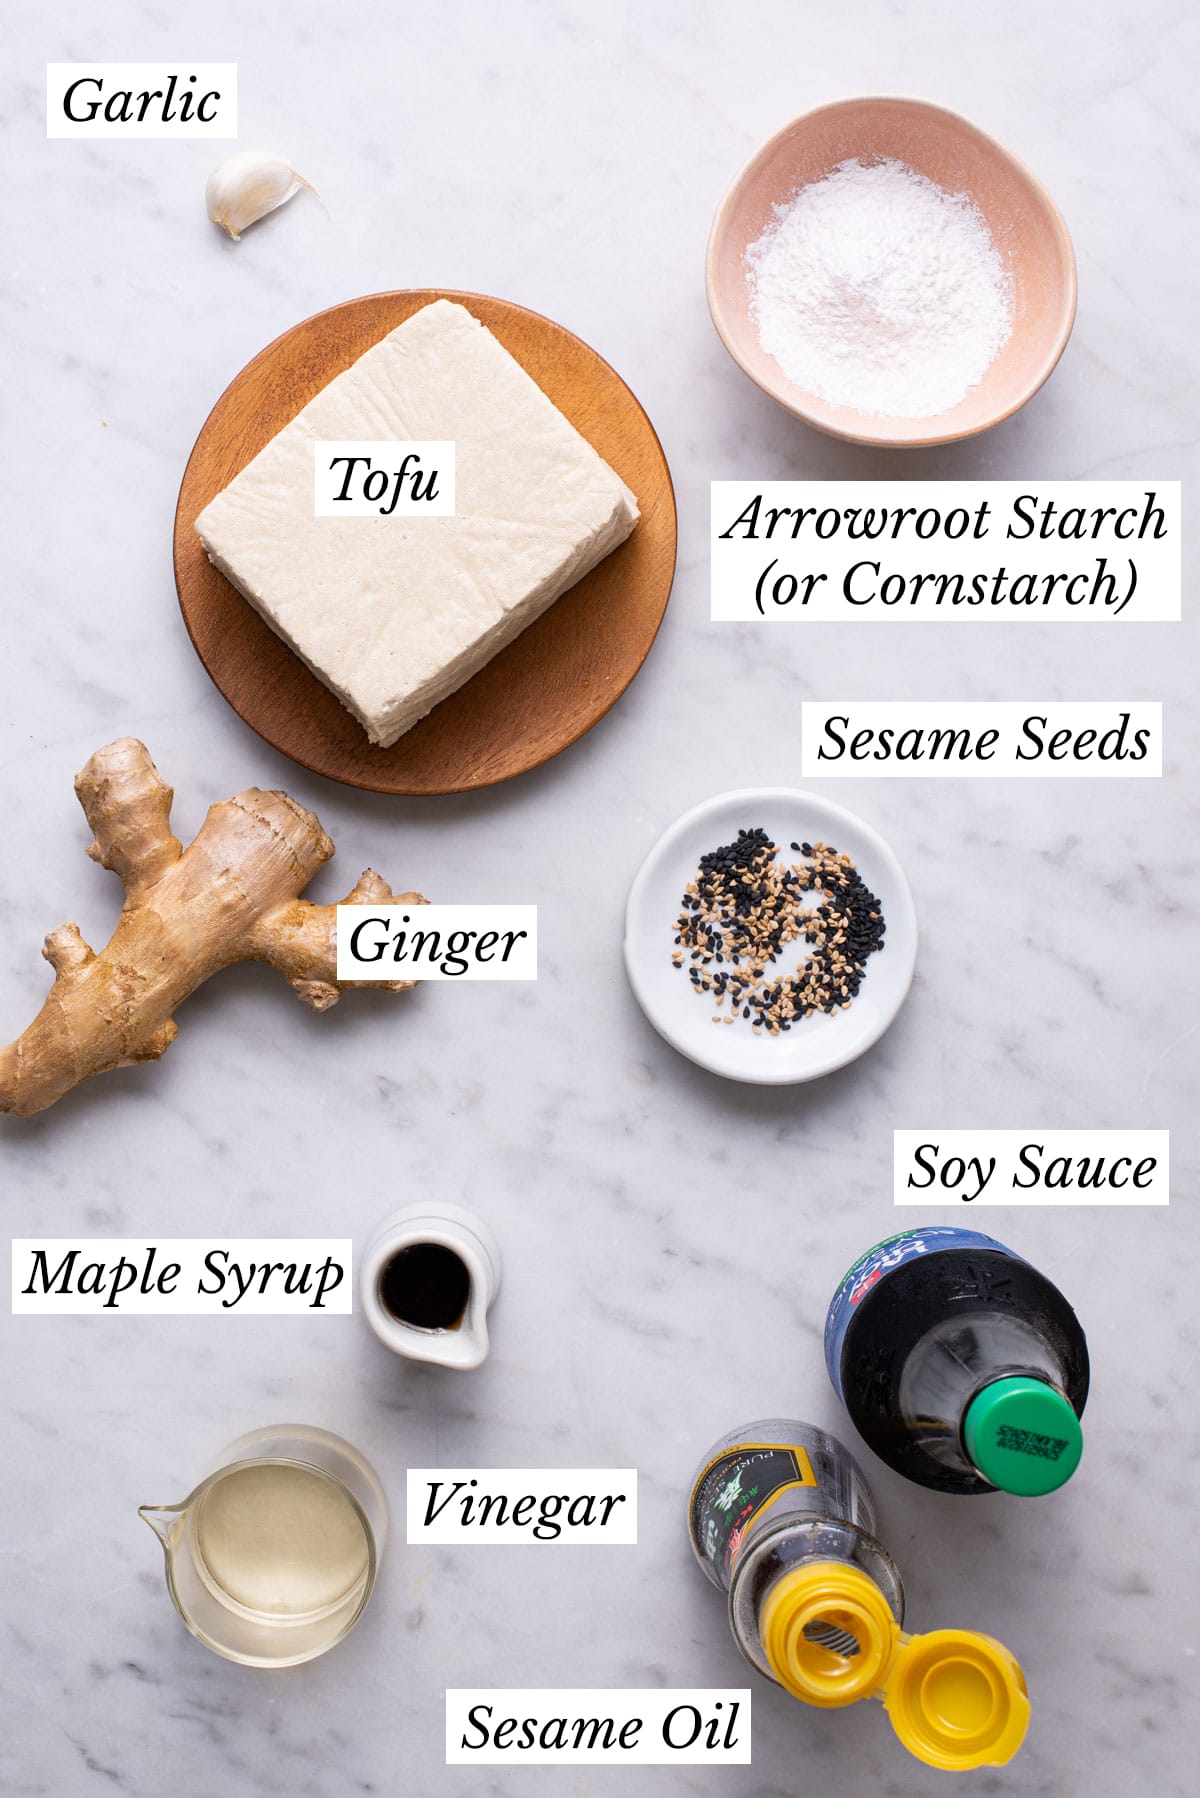 Ingredients gathered to make sesame garlic tofu.